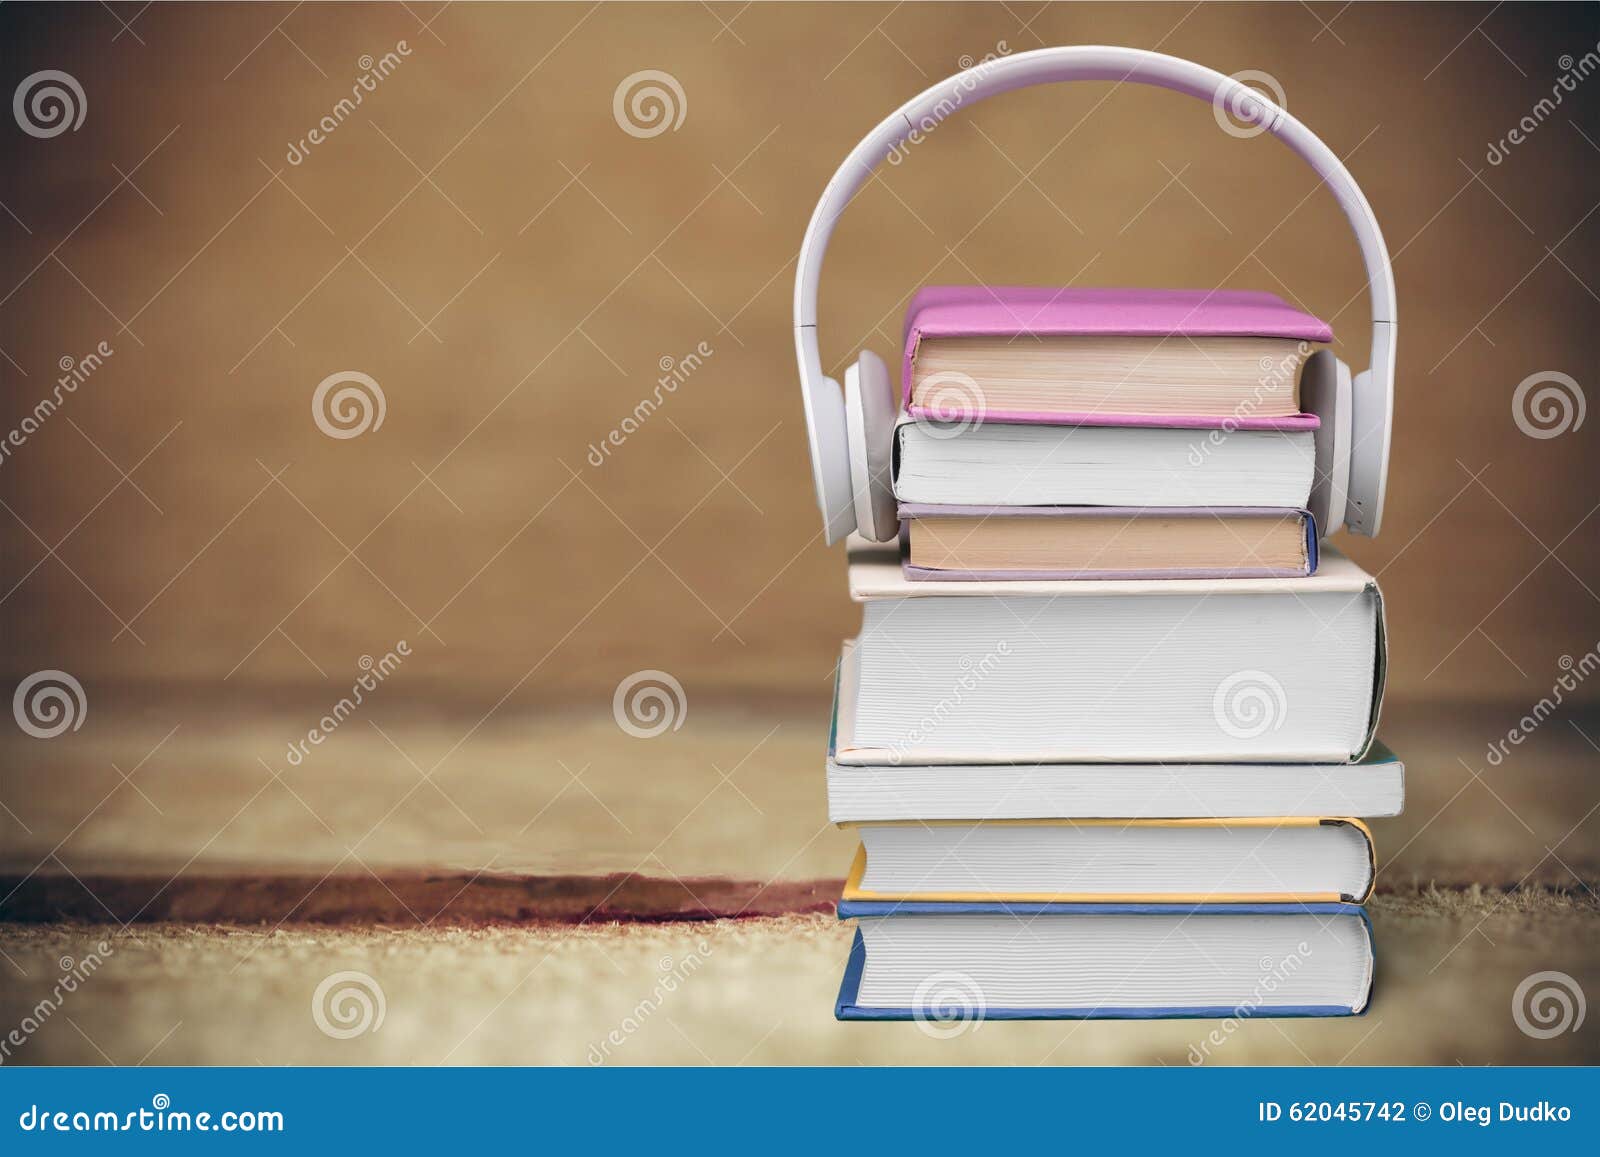 Auriculares en los libros. Los auriculares en narración del equipo de audio de los libros que escucha suenan aprendizaje electrónico del audiolibro